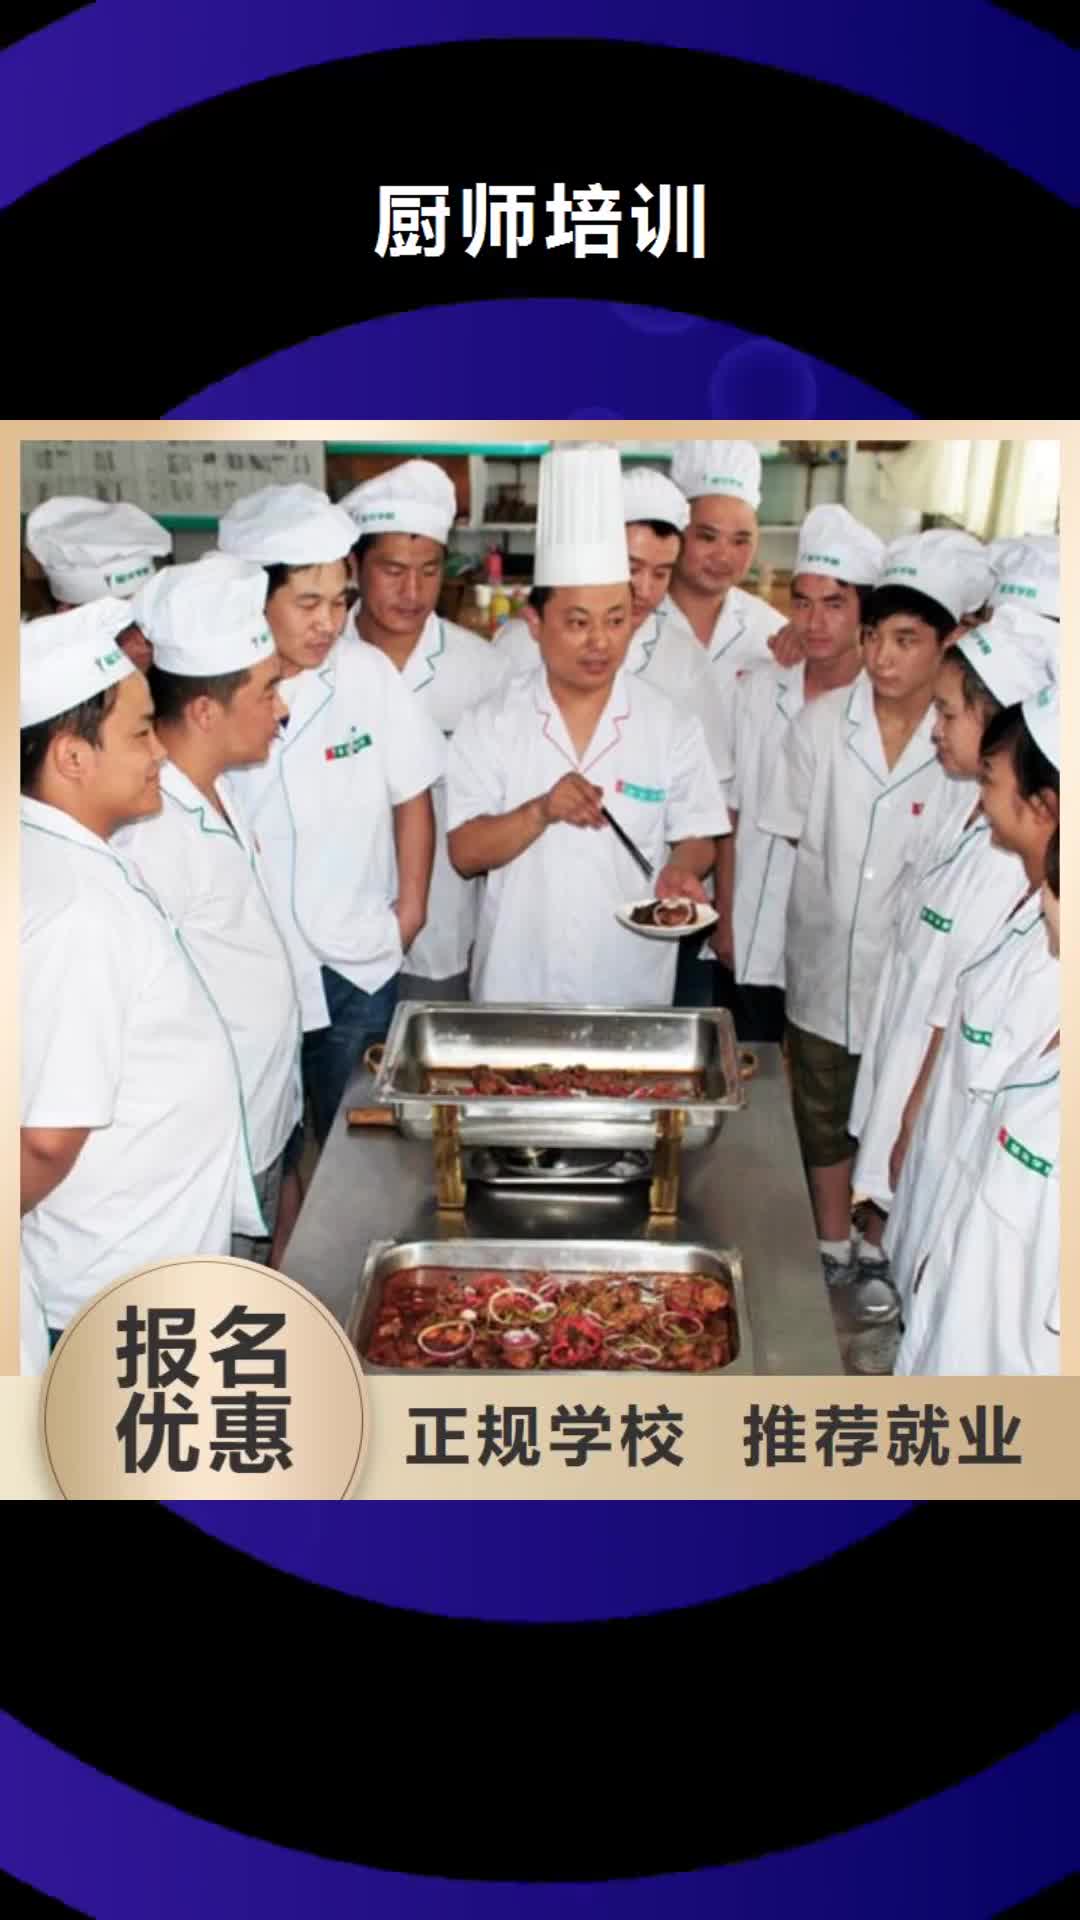 海南 厨师培训,【虎振叉车操作学校】学真技术